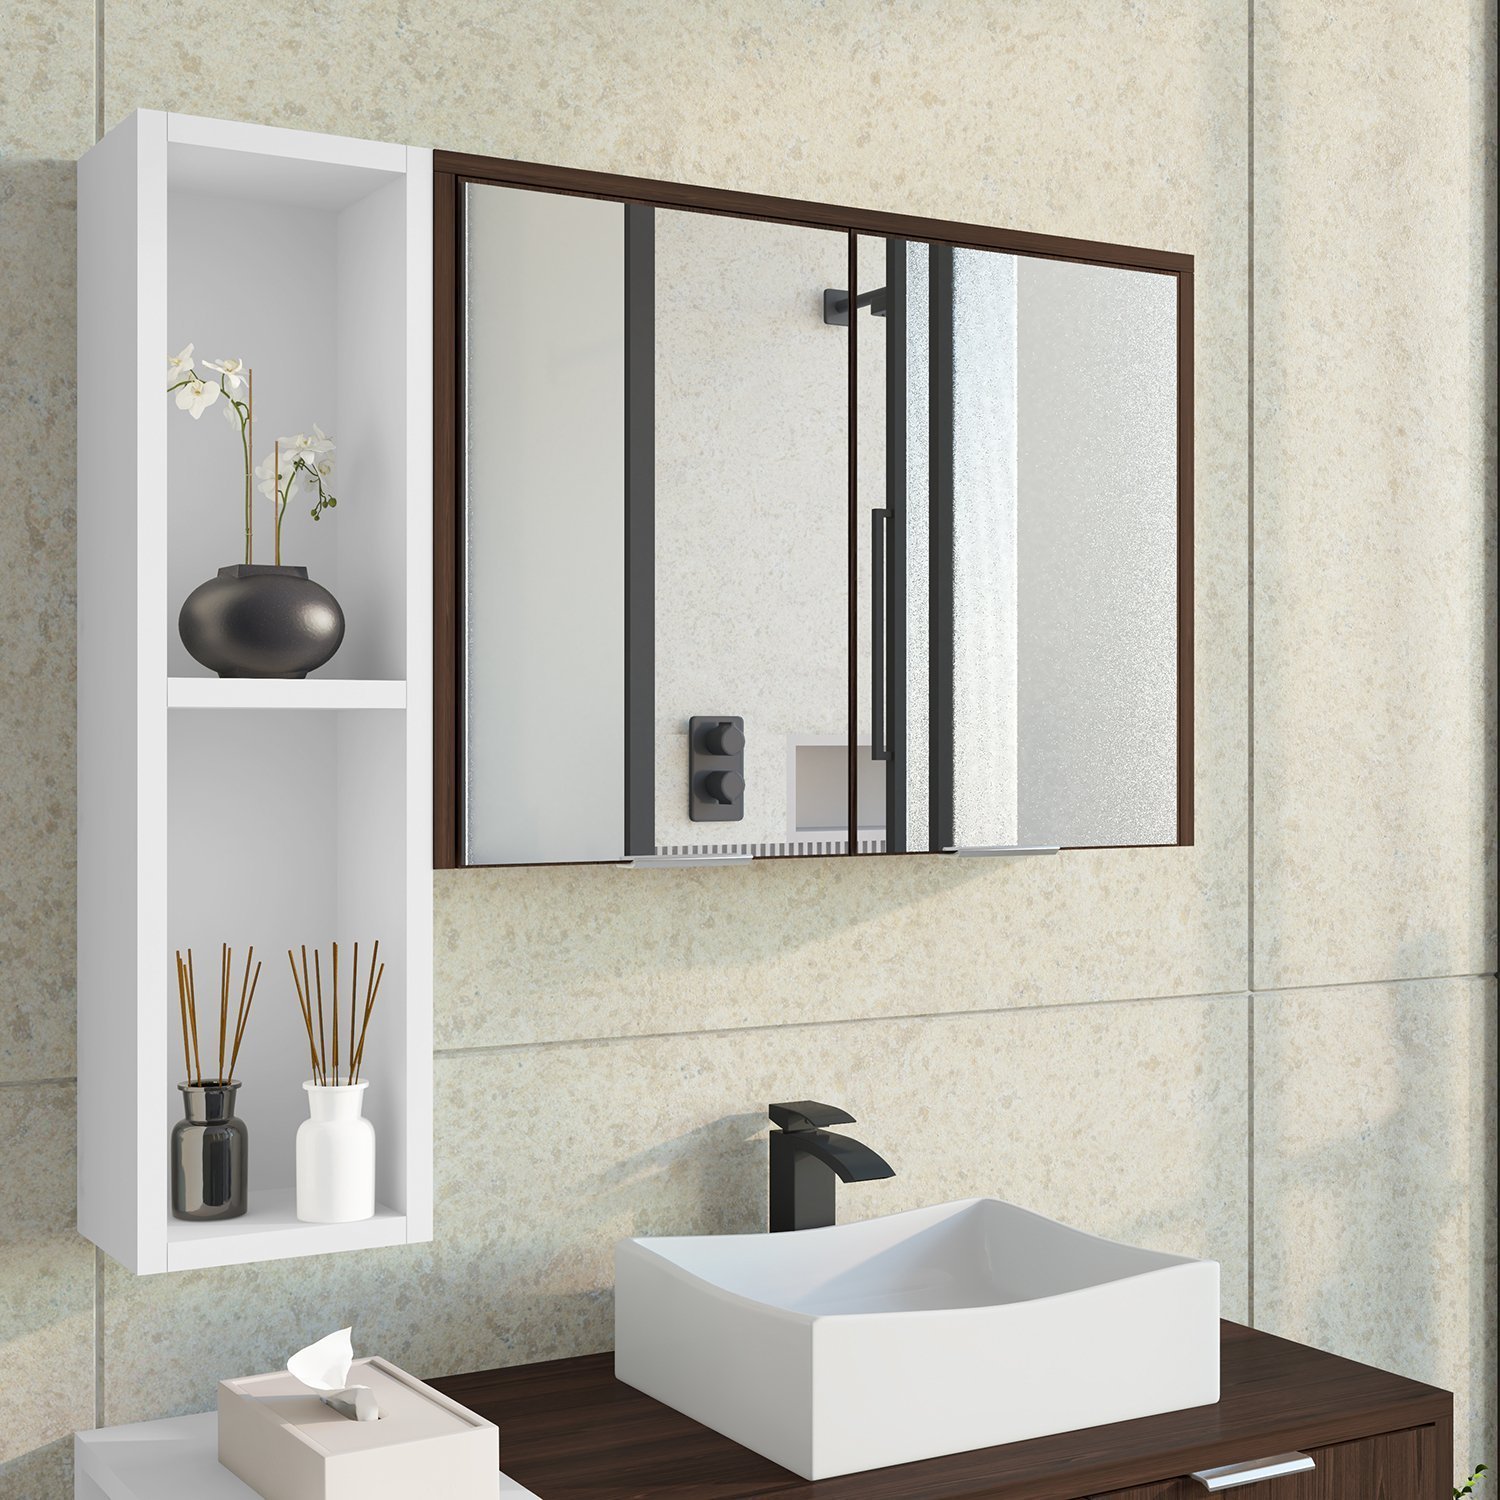 Espelheira Para Banheiro Ibiza 2 Portas com Espelho Nicho Multifuncional Puxador de Alumínio